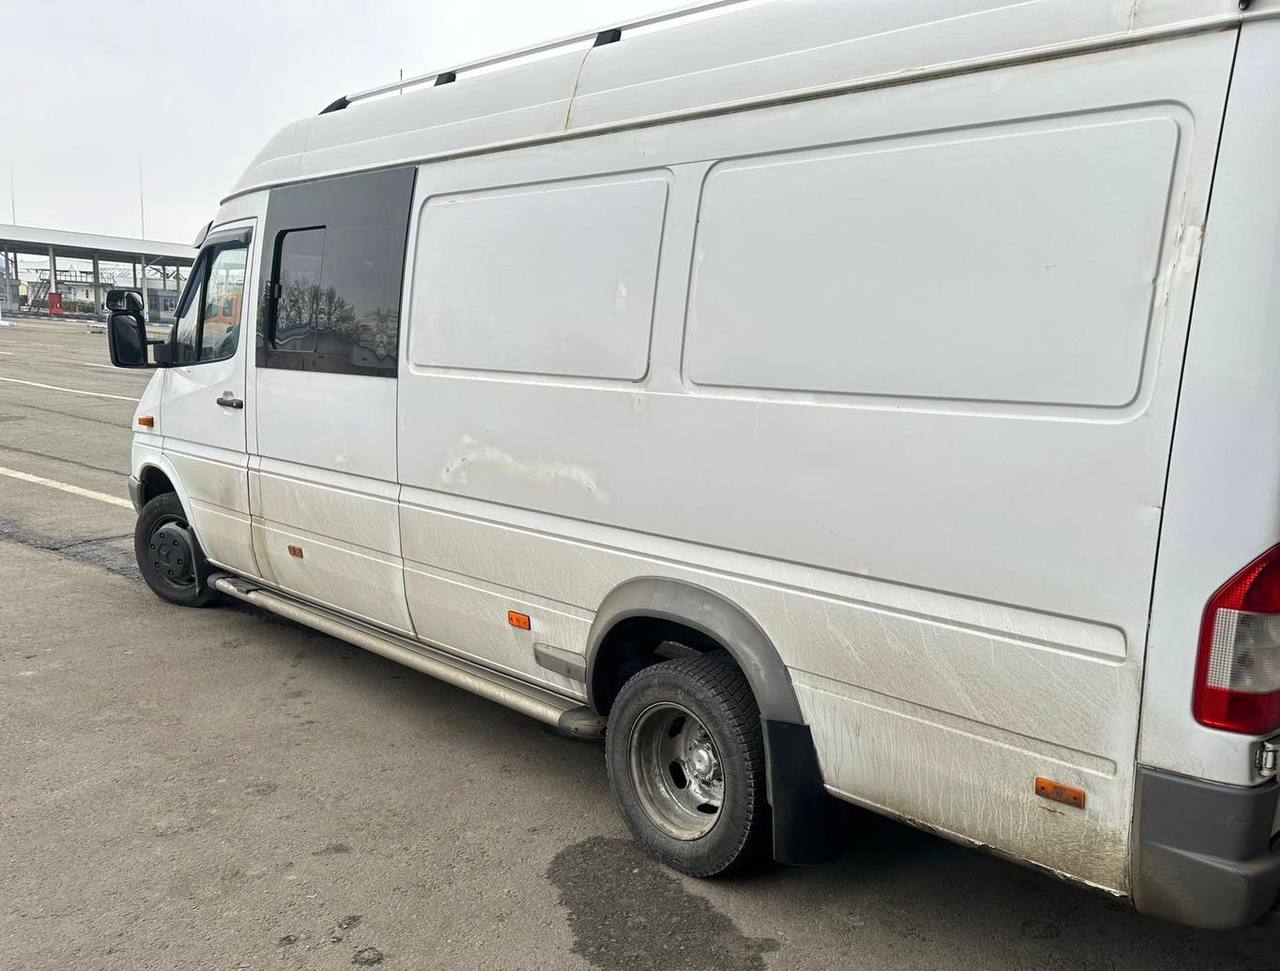 FOTO Leușeni: un șofer aducea în Moldova un aparat electric Bitmain Antminer - Bitcoin. Vameșii au ridicat bunul nedeclarat 